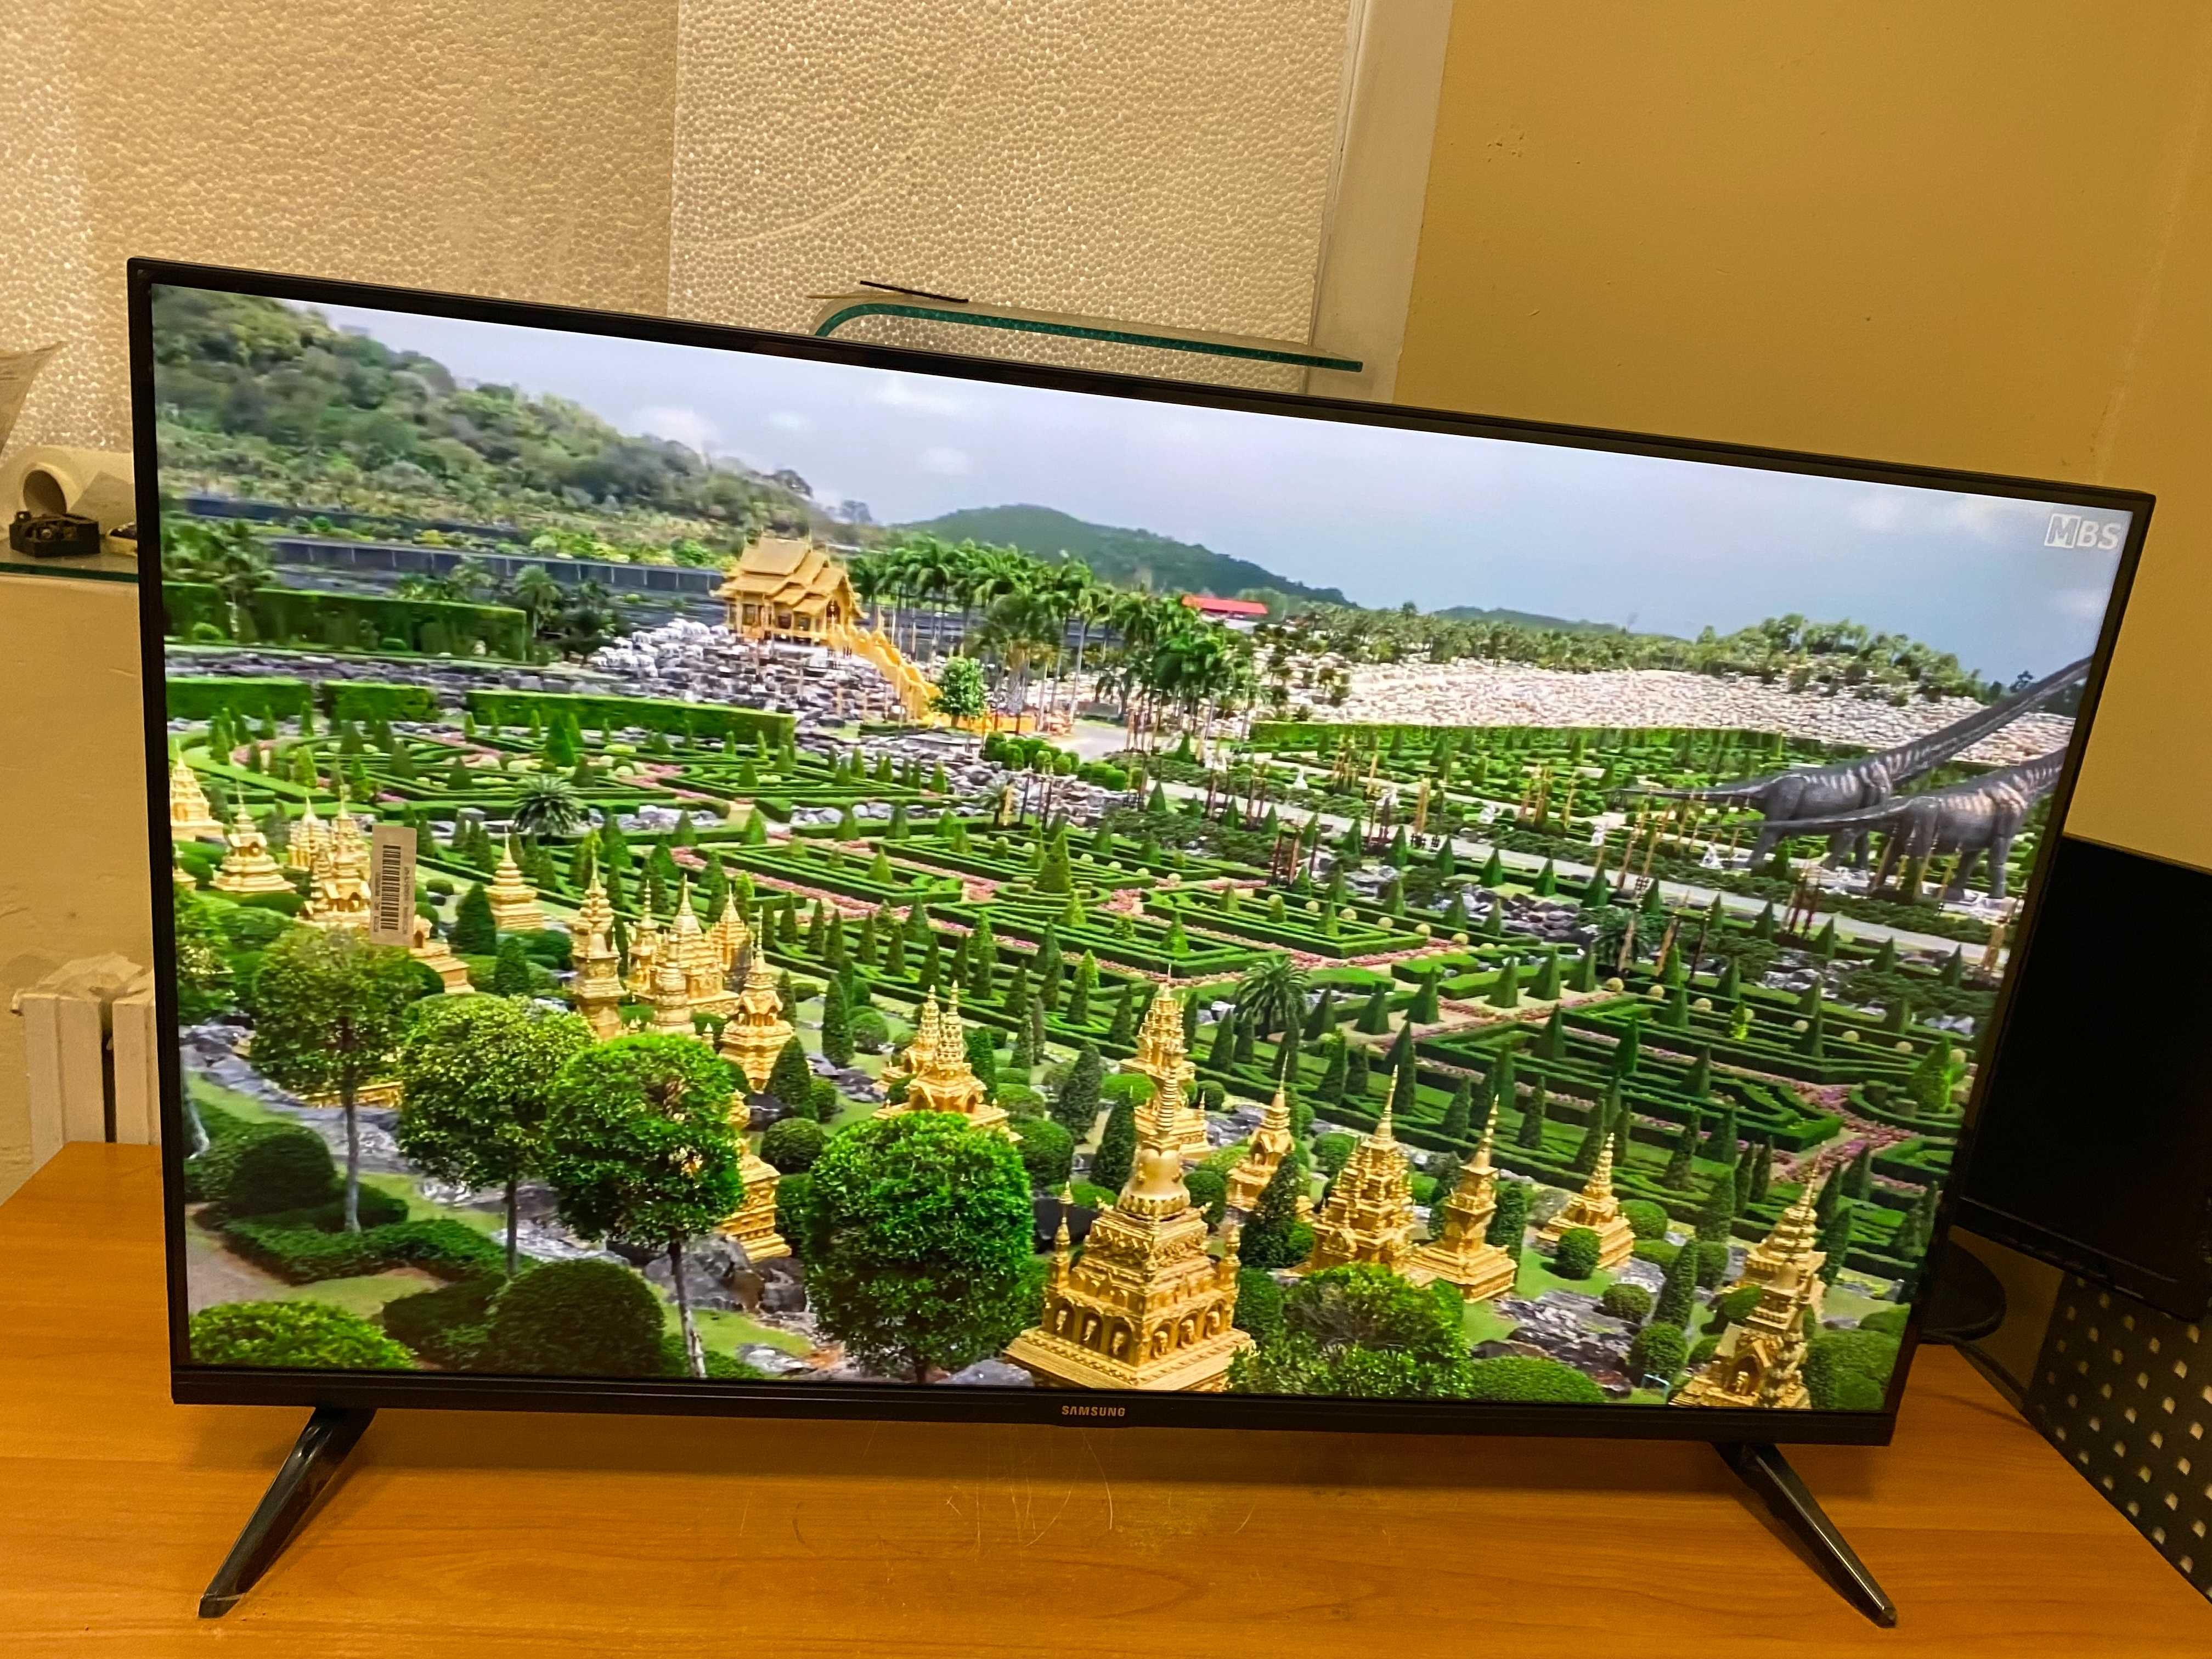 Телевизоры Samsung Smart TV 32'' T2 WiFI самсунг КОРЕЯ, акция!